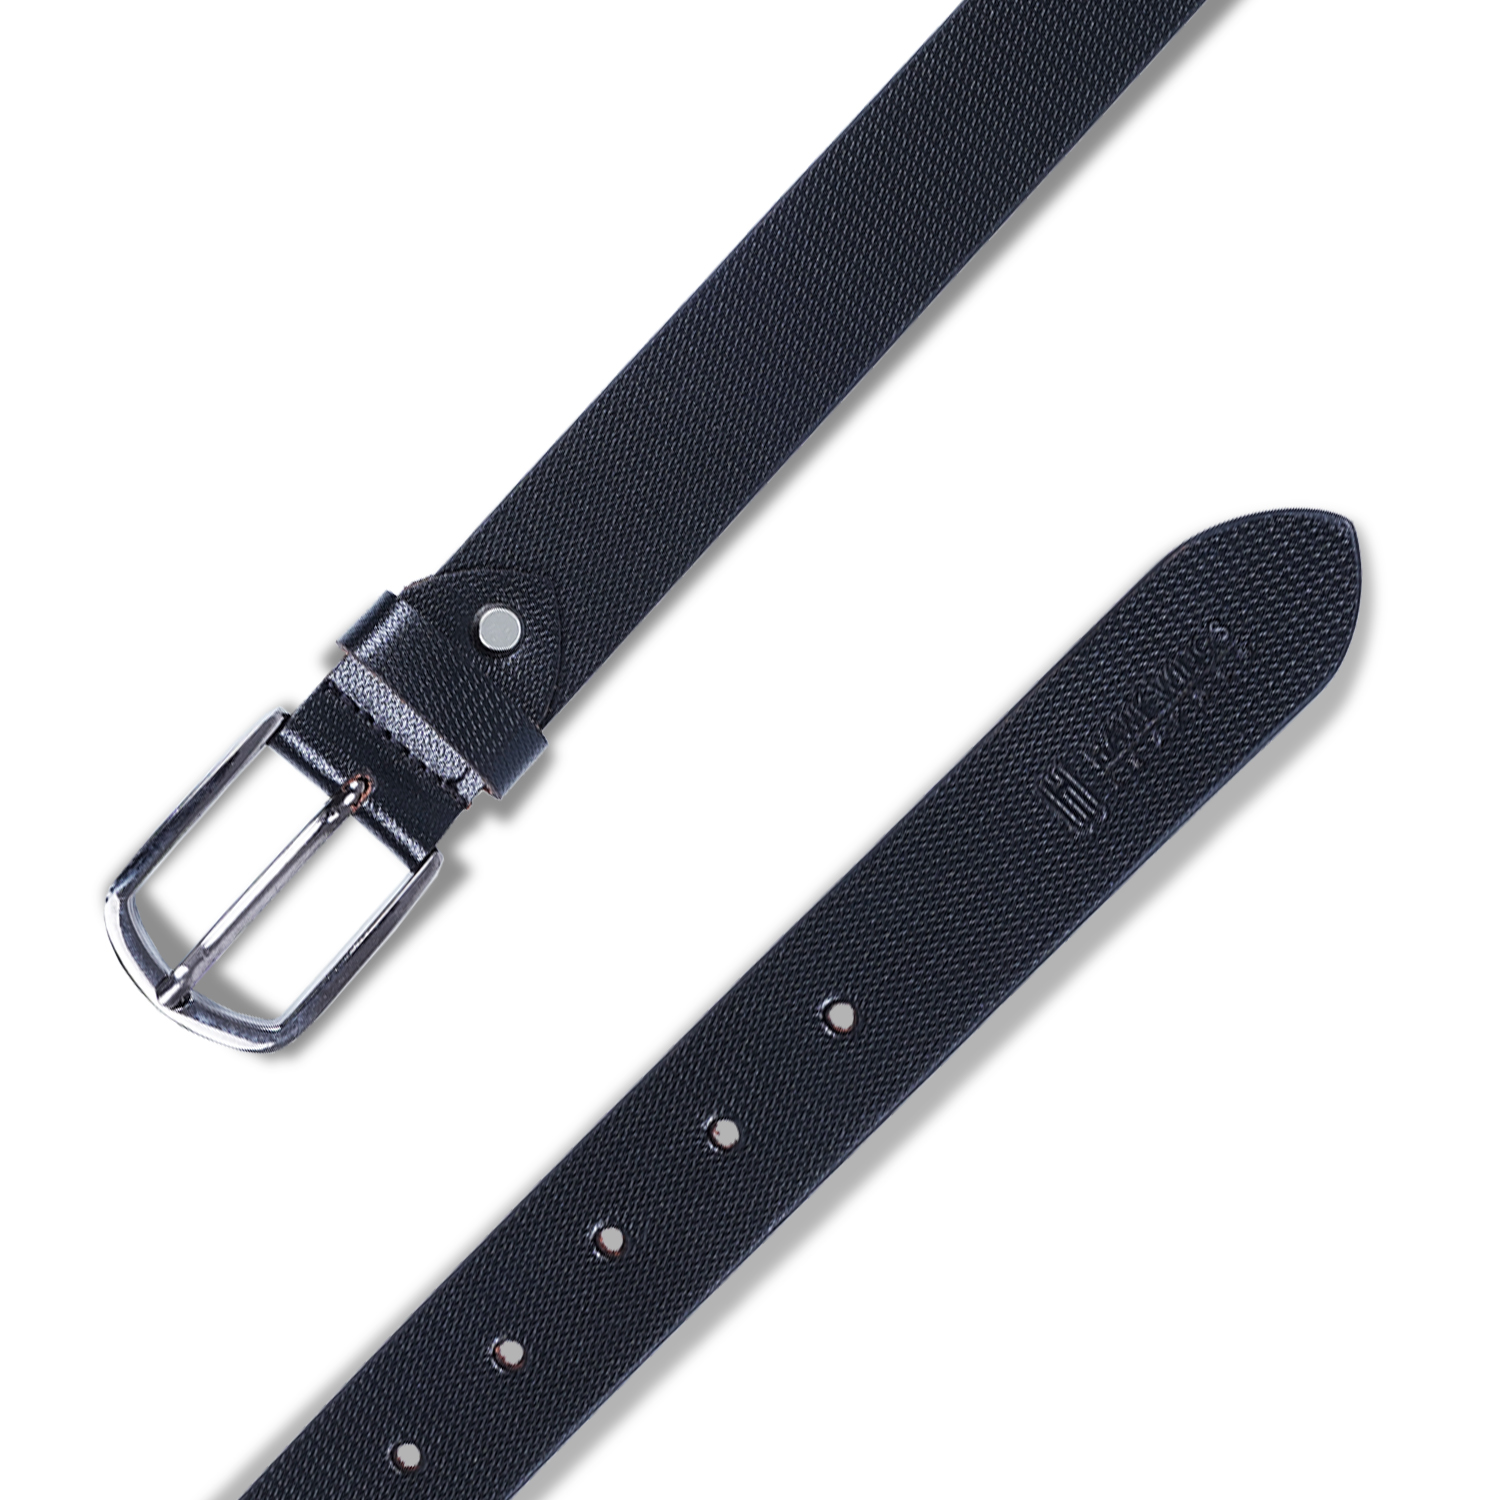  Genuine Leather belt |Formal Belt | Black-asset-267